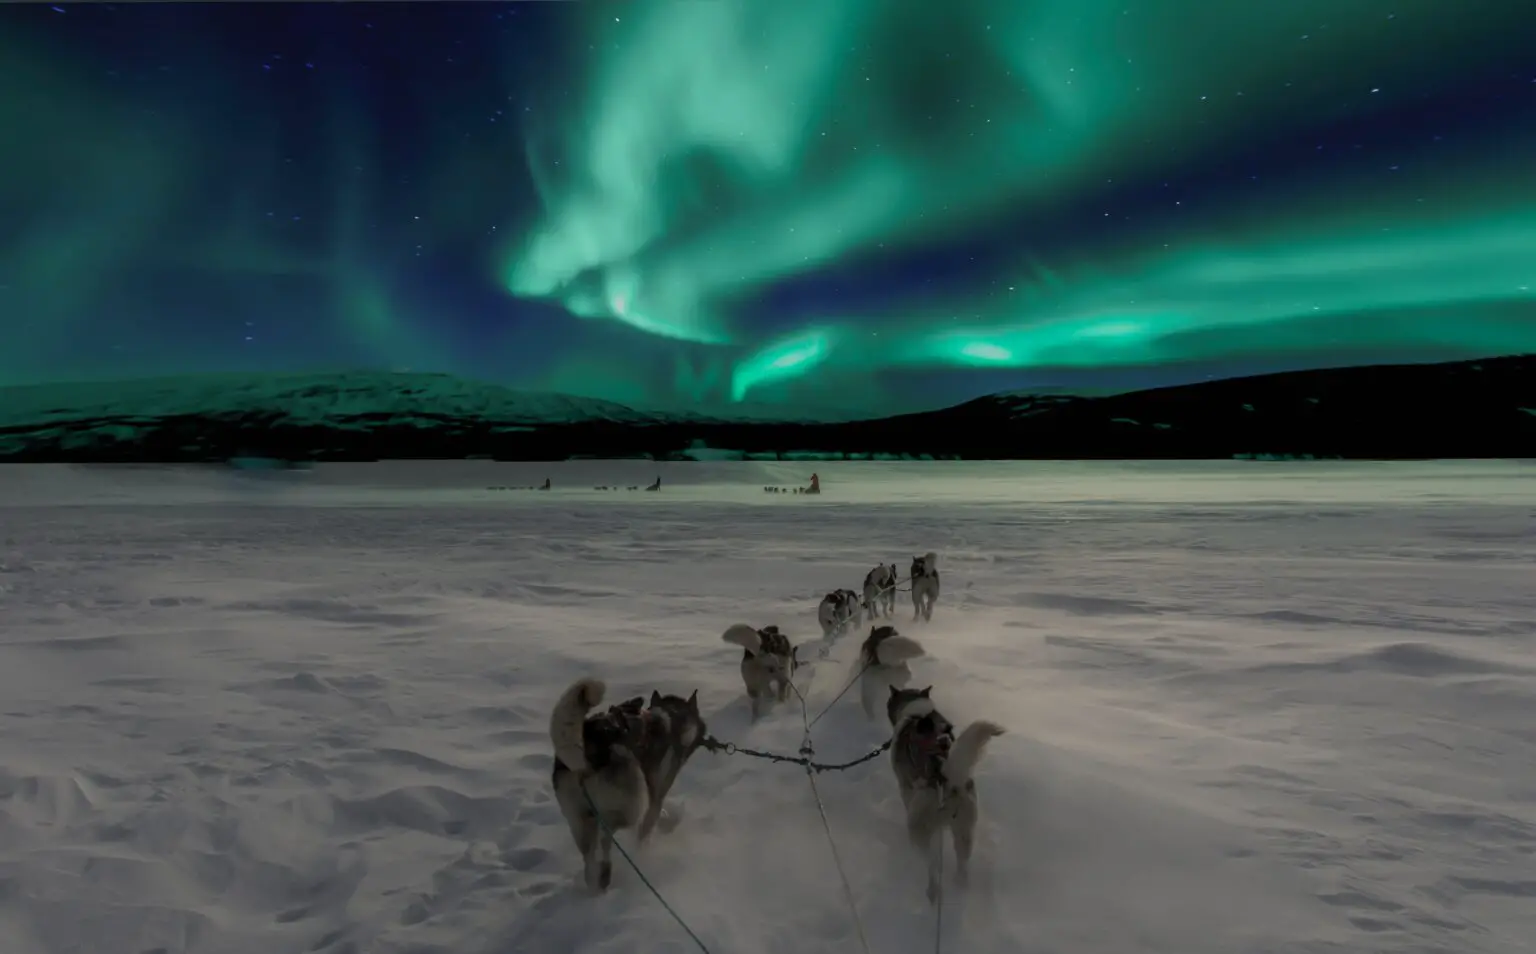 El origen del misterioso sonido de la aurora boreal